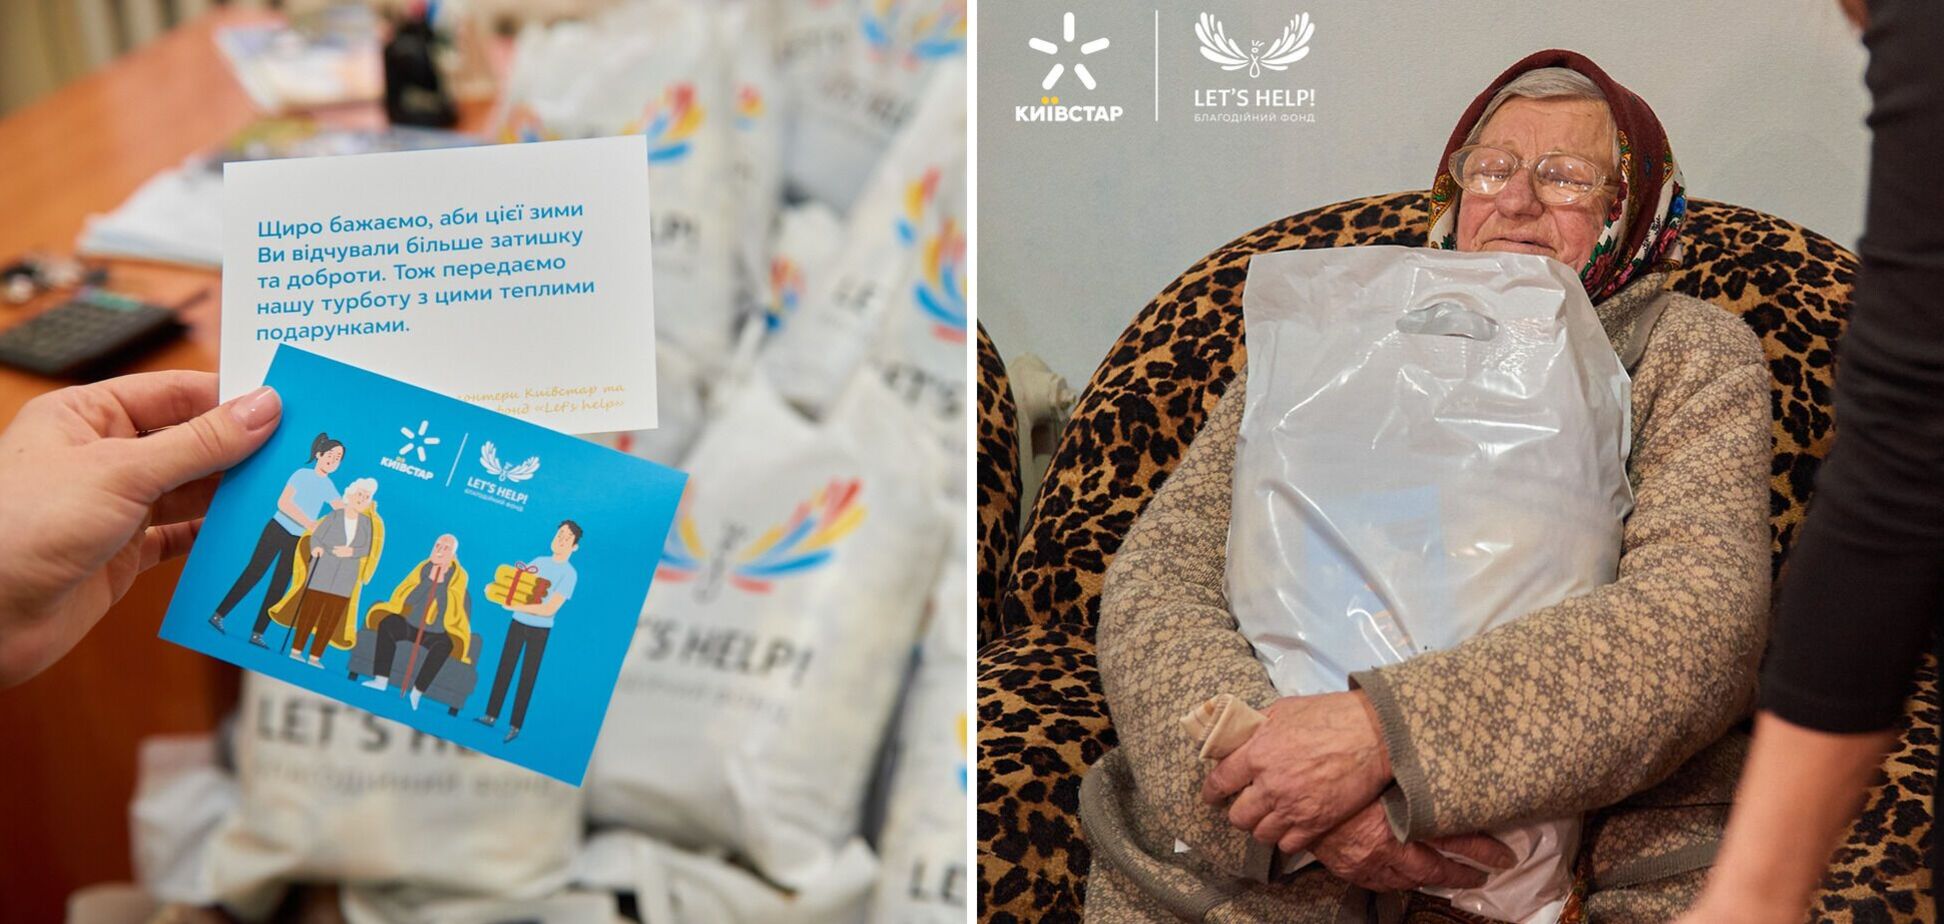 'Київстар' разом із волонтерами передали 1 млн грн на теплі речі для літніх людей